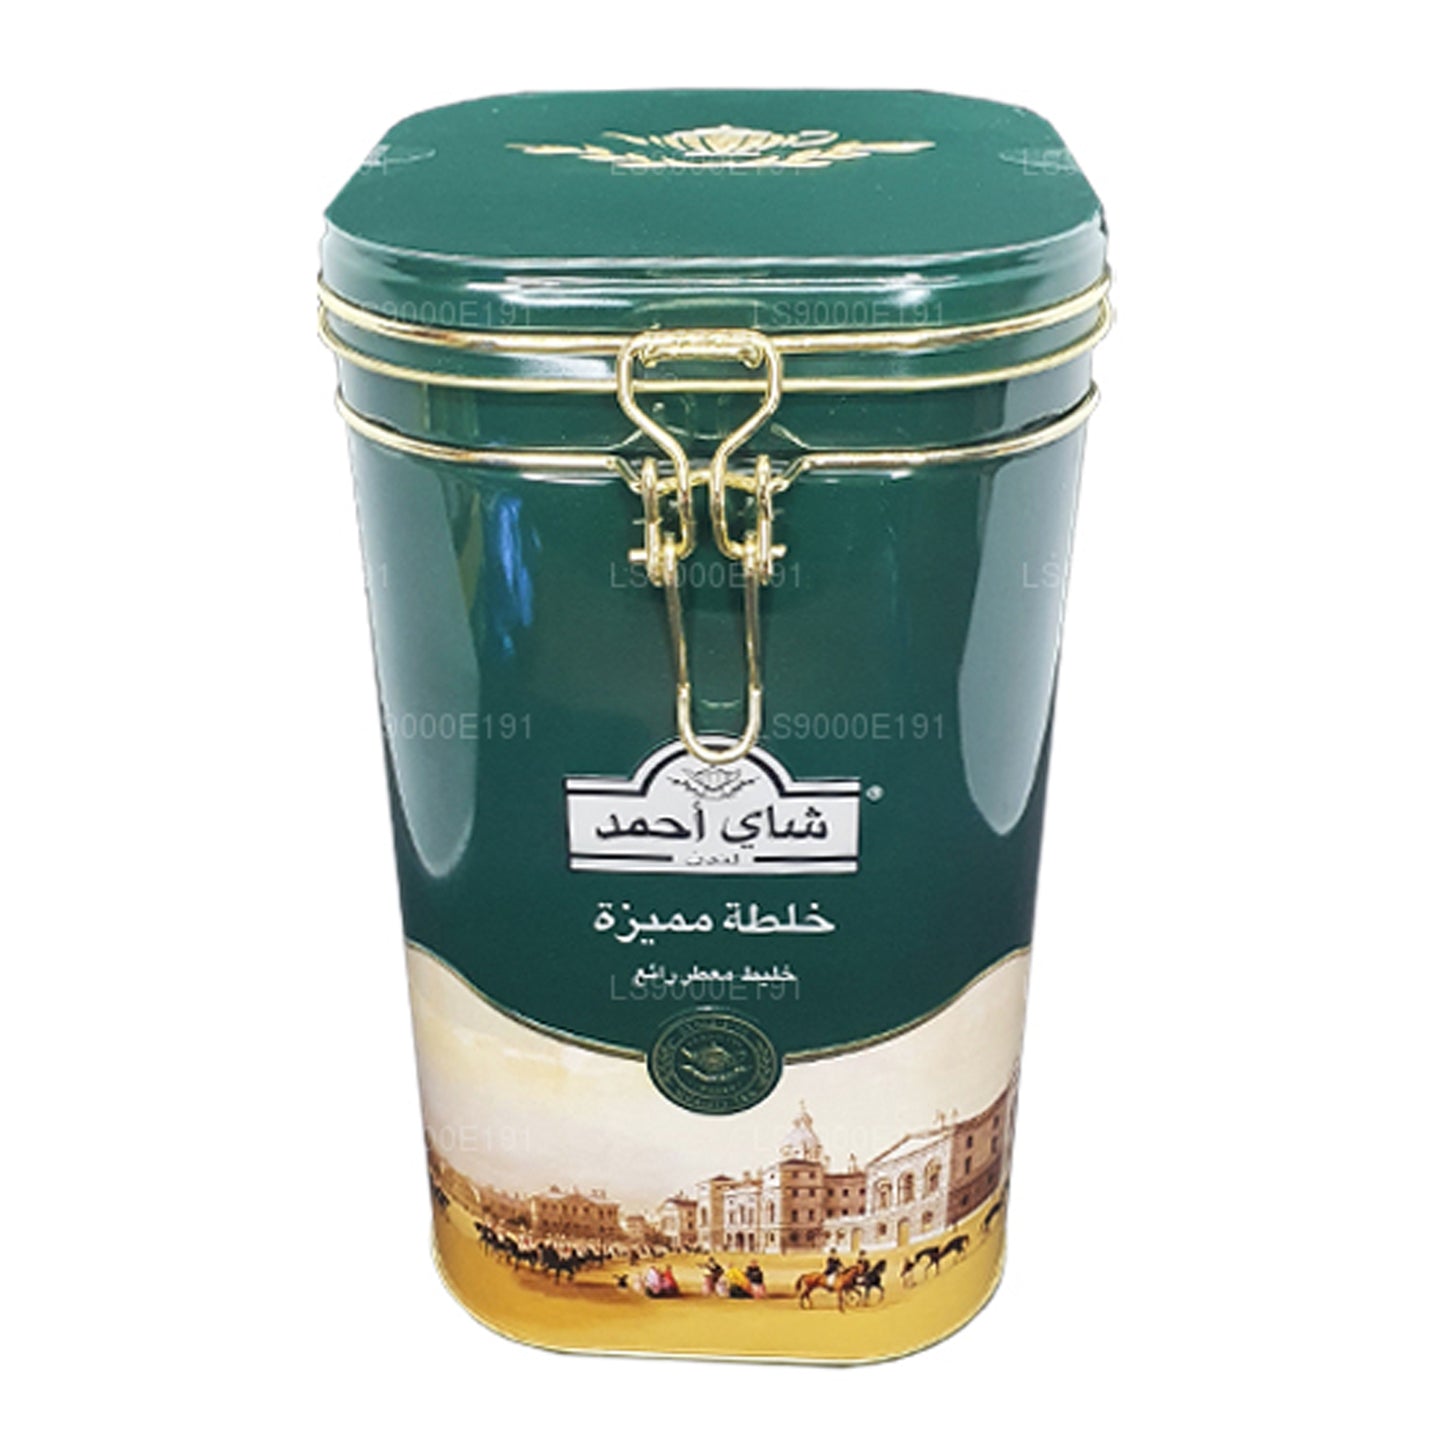 Петля для чая Ahmad из специальной смеси (450 г)